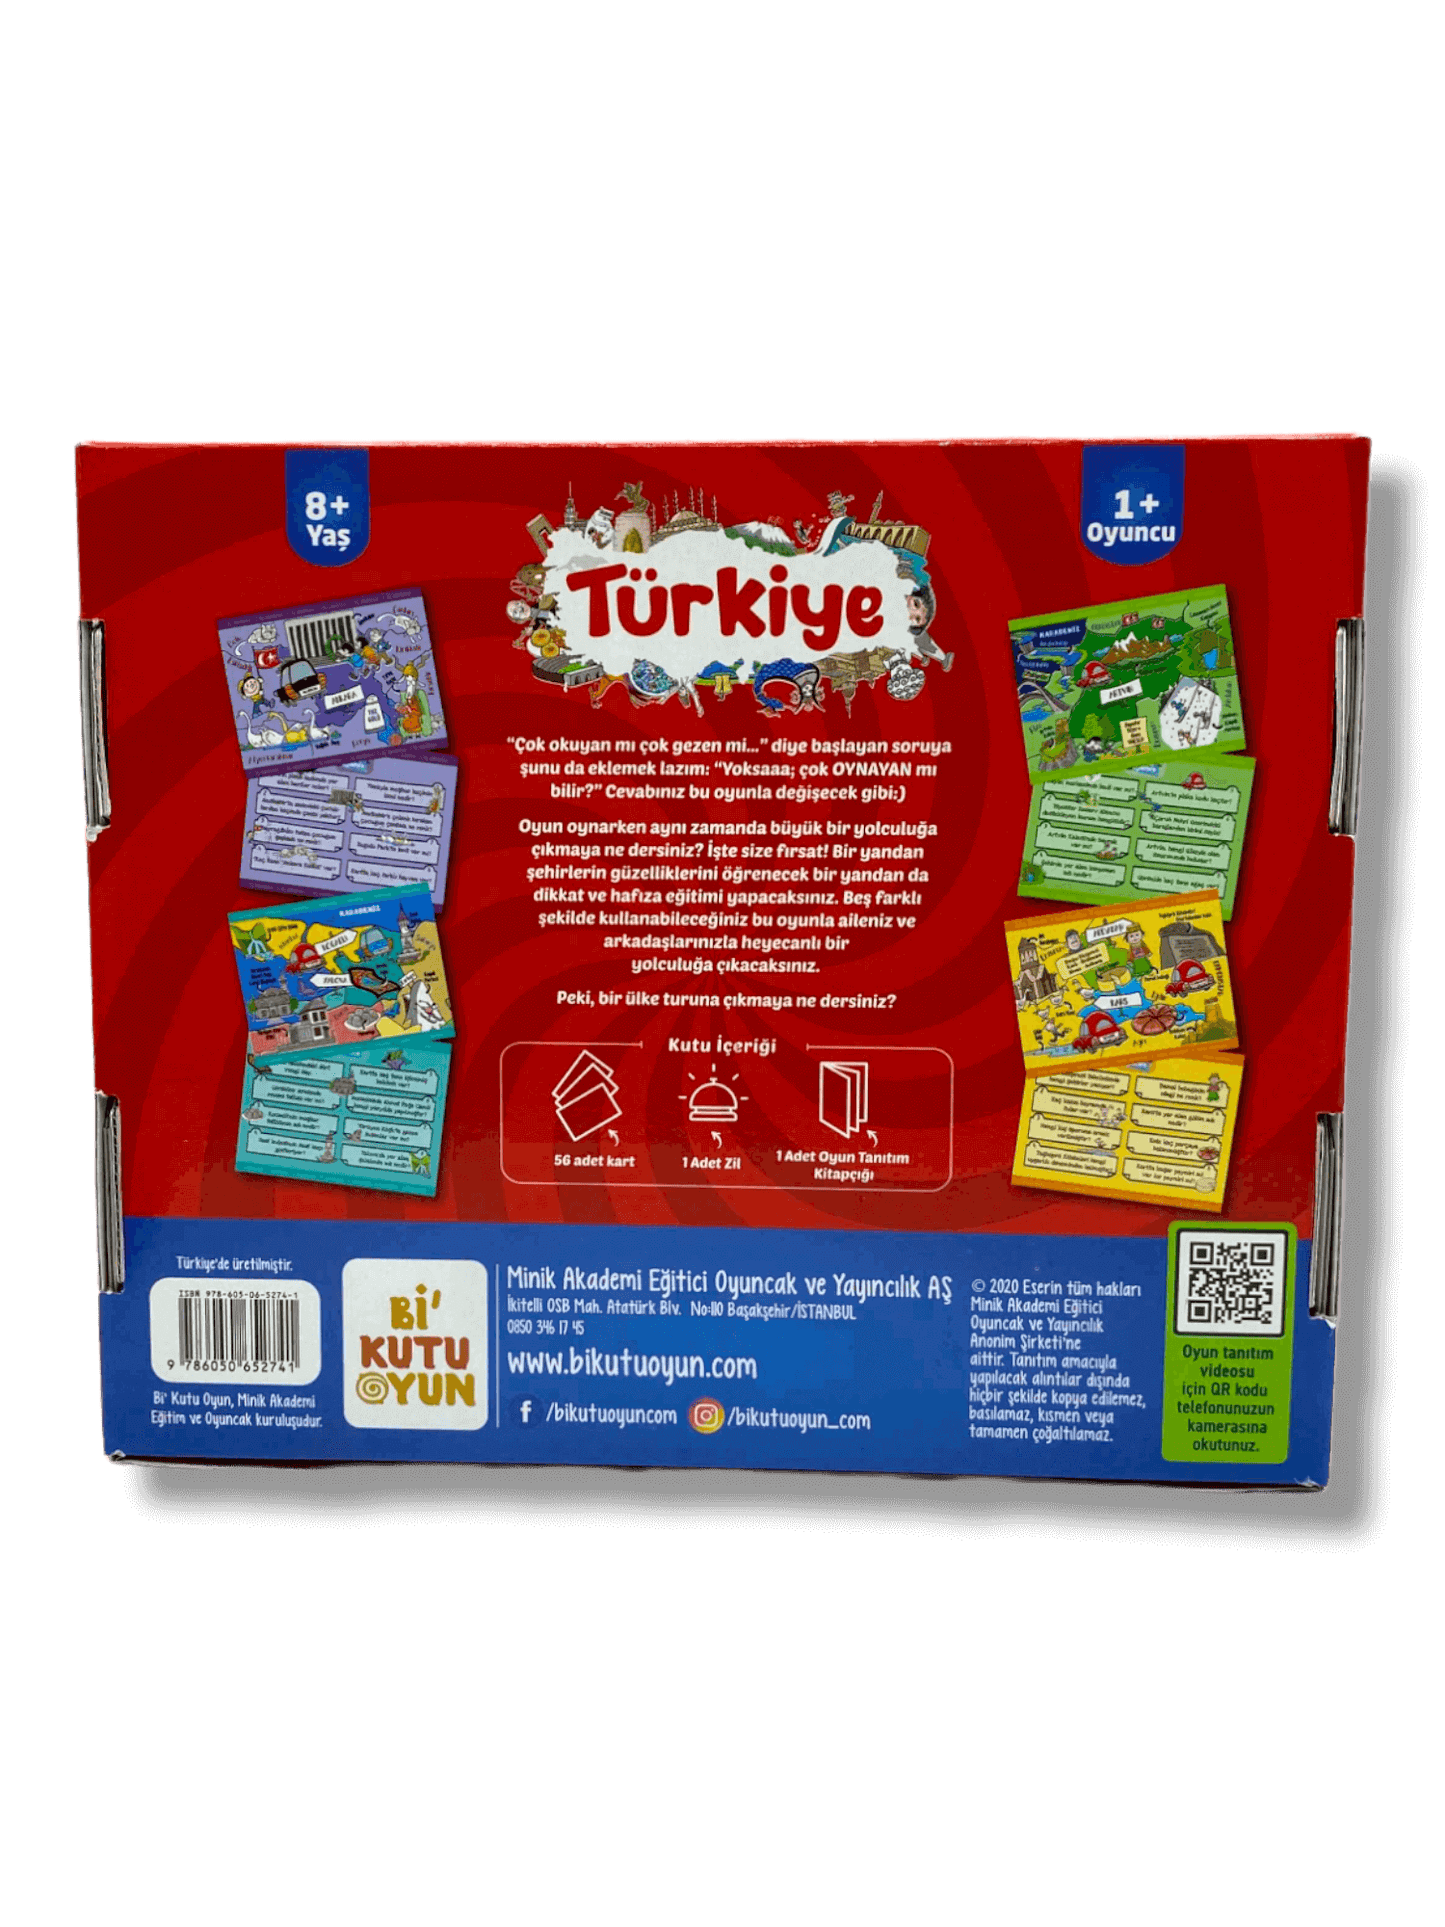 Türkiye Dikkat Ve Genel Kültür Oyunu - tüm aile icin (Turkish culture game)